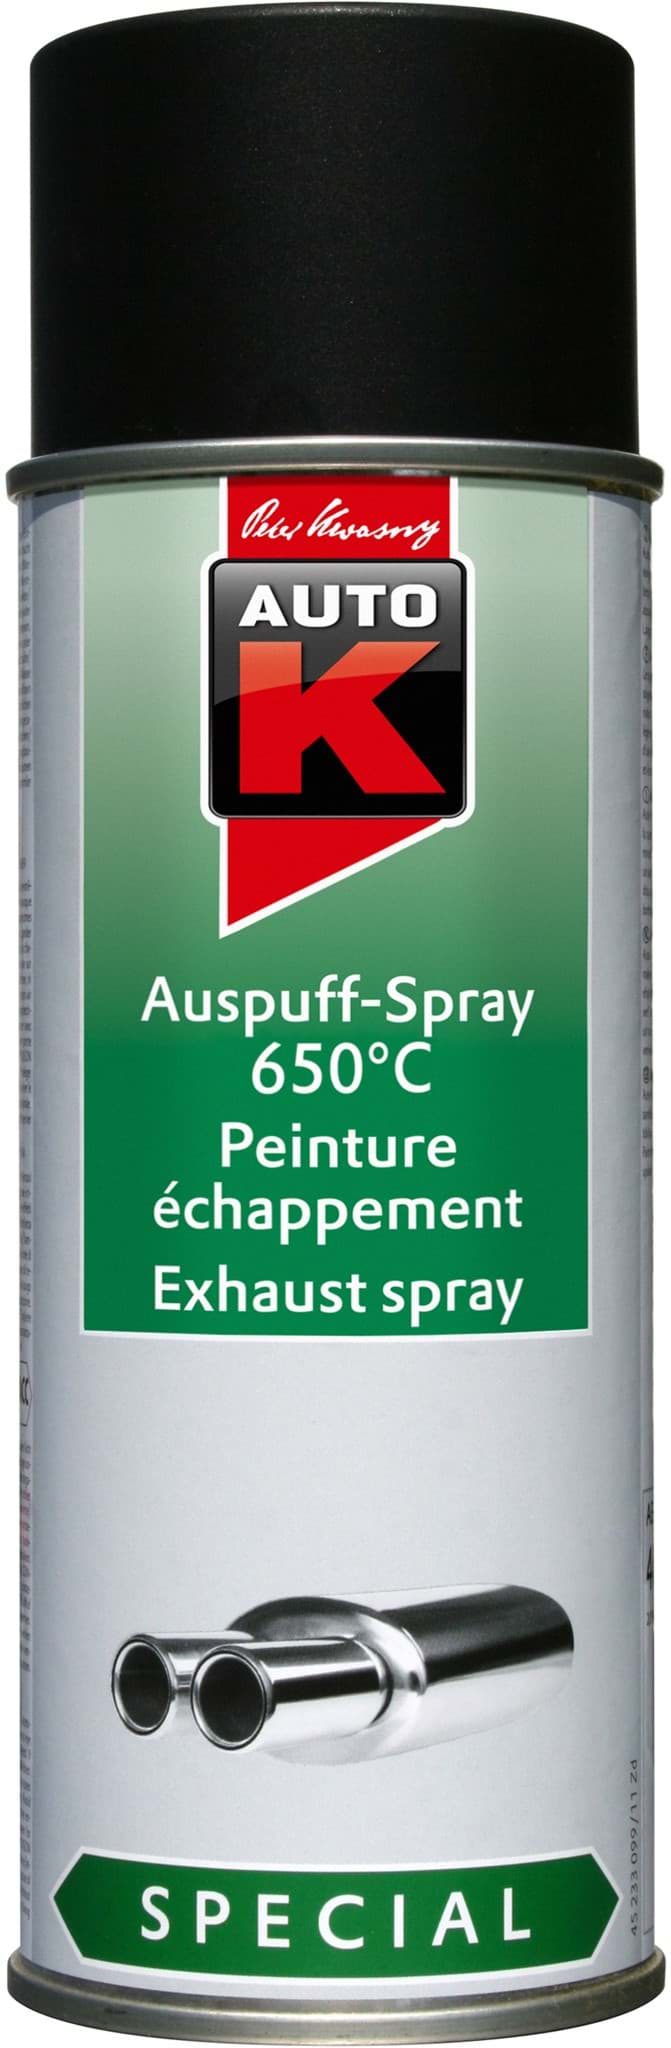 Picture of AutoK Auspuff Spray 650C° schwarz 400ml 233099 